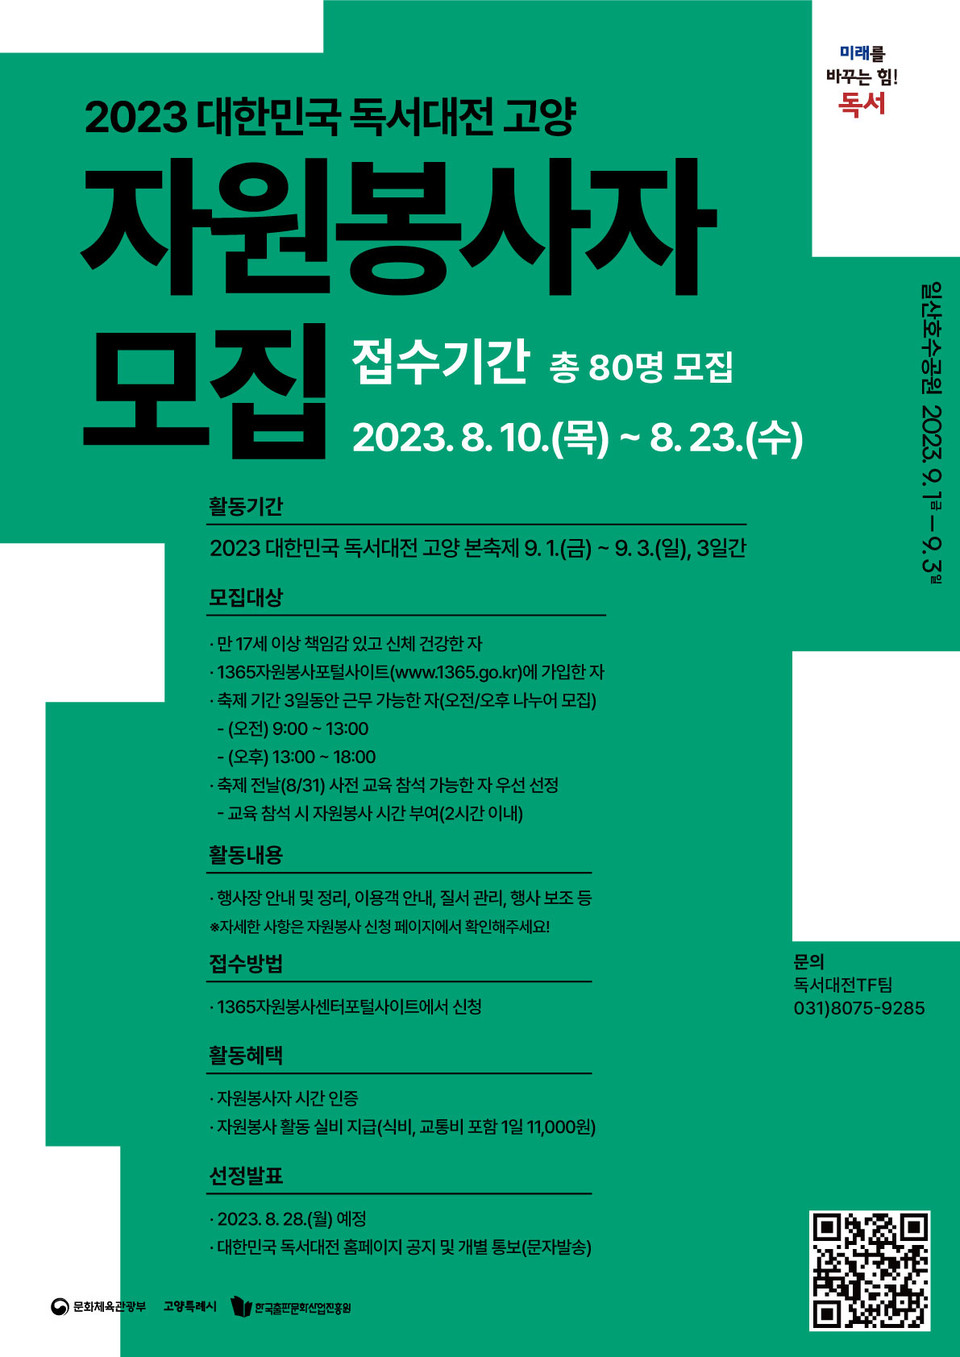 ▲ 고양특례시, '2023 대한민국 독서대전 고양' 자원봉사자 모집